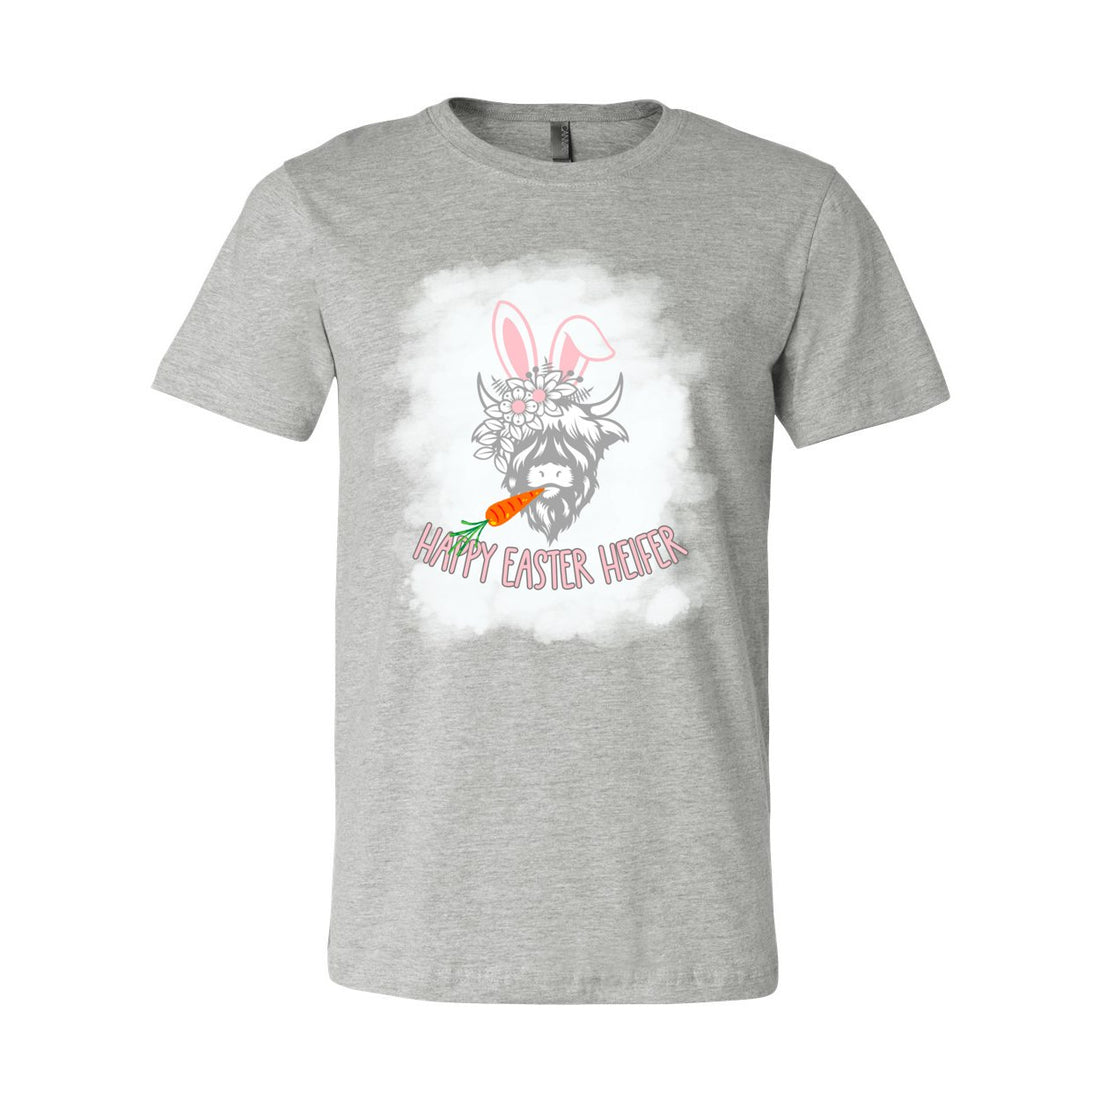 Easter Heifer Tee - T-Shirts - Positively Sassy - Easter Heifer Tee